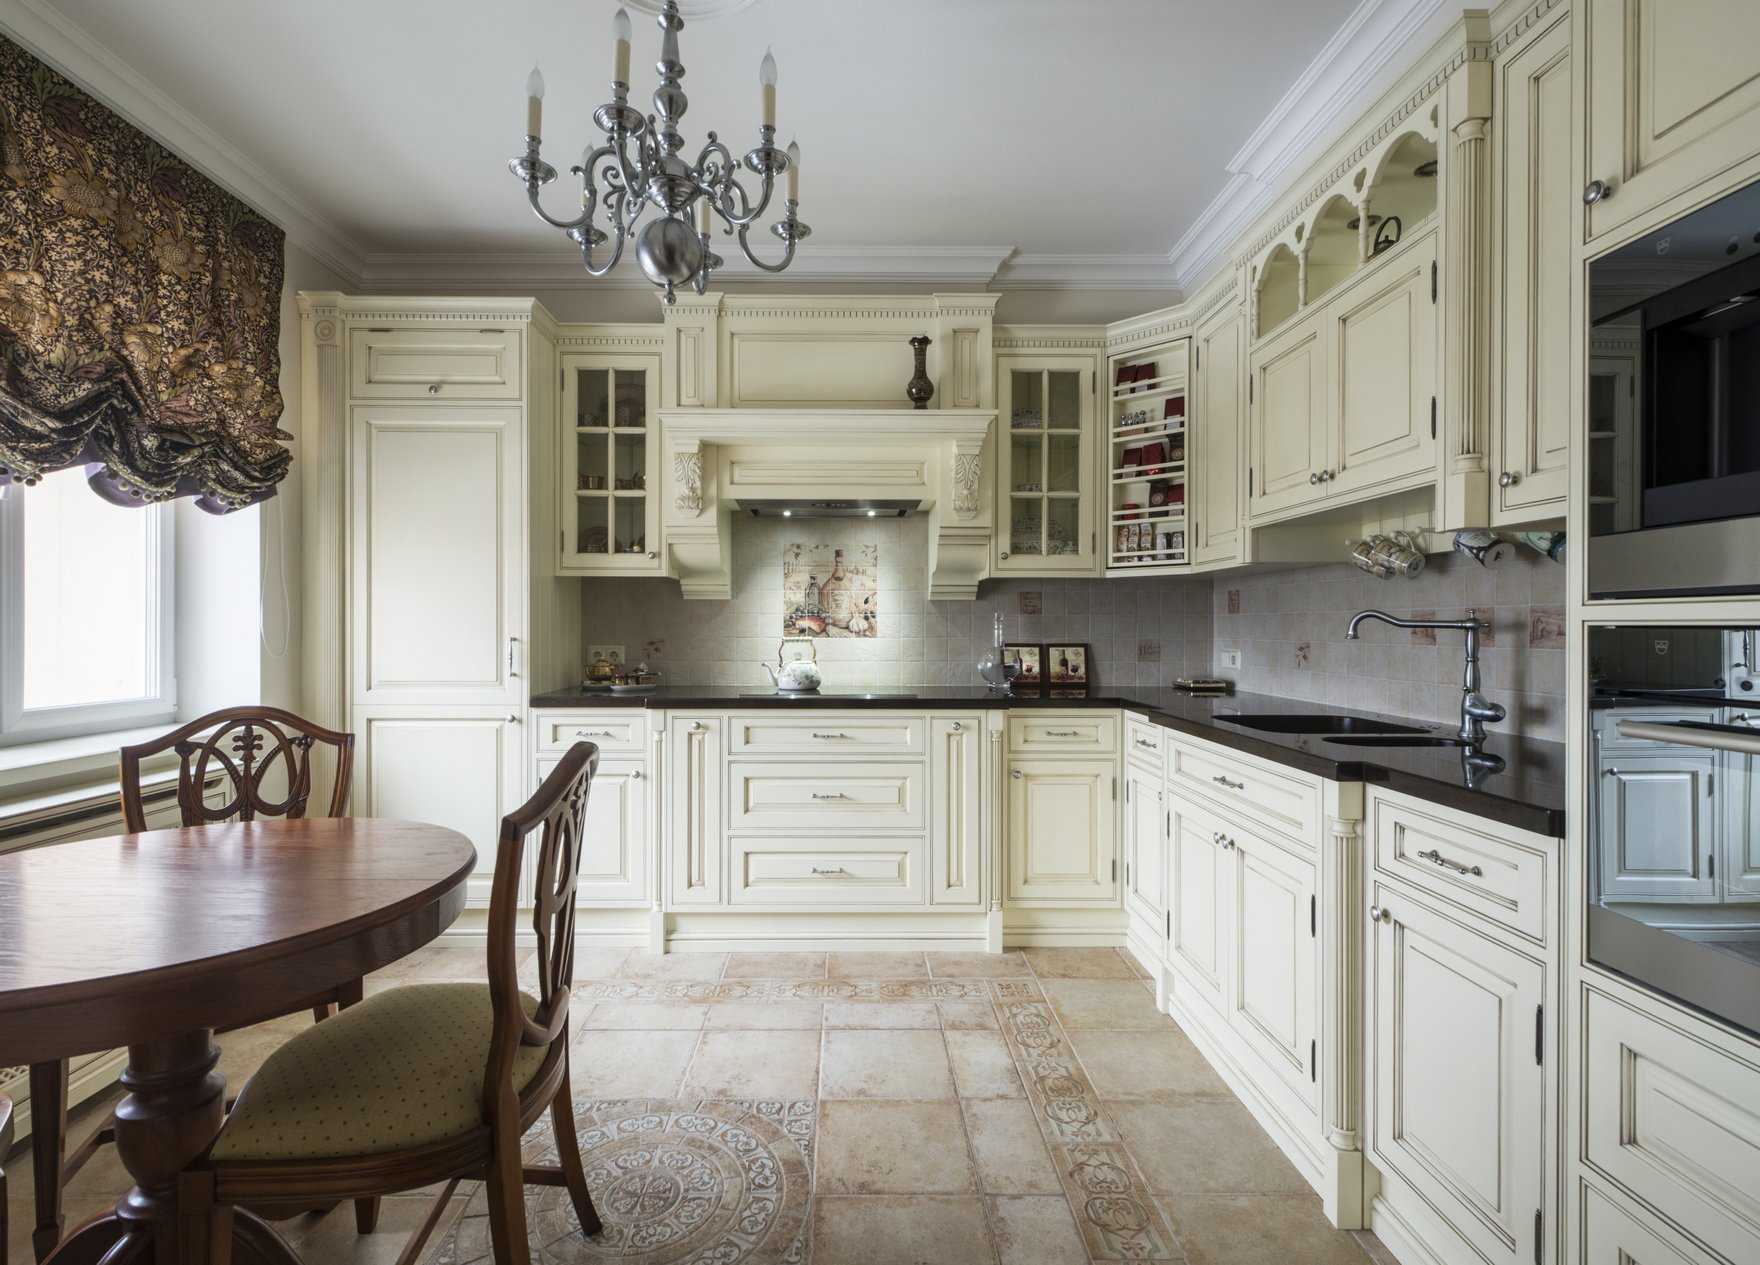 Кухня в классическом стиле дизайн интерьера фото